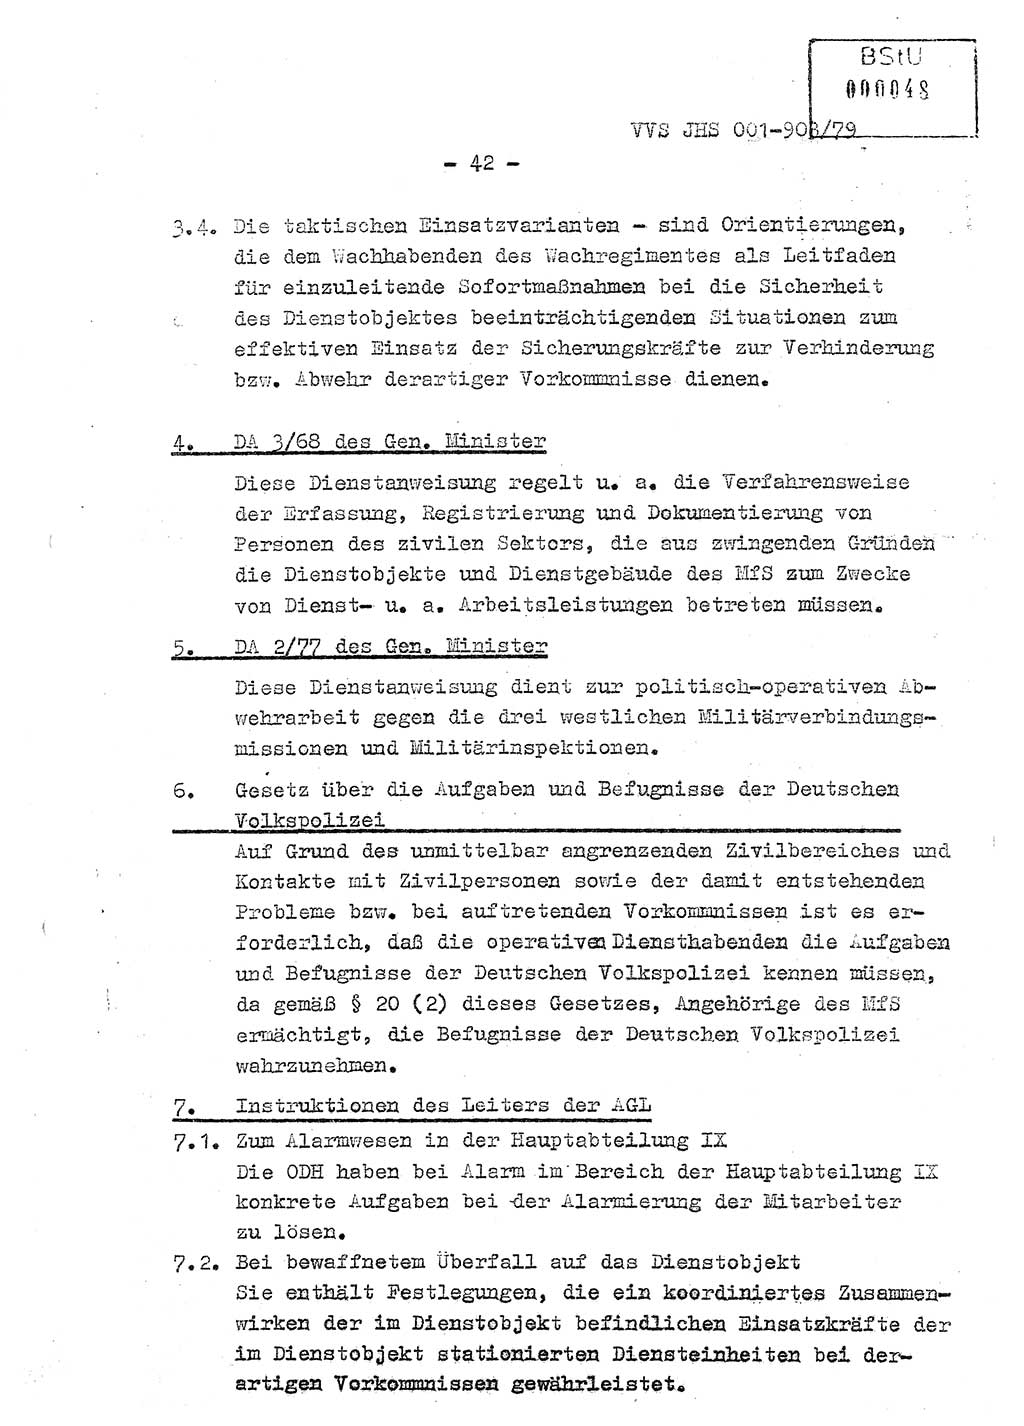 Fachschulabschlußarbeit Oberleutnant Jochen Pfeffer (HA Ⅸ/AGL), Ministerium für Staatssicherheit (MfS) [Deutsche Demokratische Republik (DDR)], Juristische Hochschule (JHS), Vertrauliche Verschlußsache (VVS) 001-903/79, Potsdam 1979, Seite 42 (FS-Abschl.-Arb. MfS DDR JHS VVS 001-903/79 1979, S. 42)